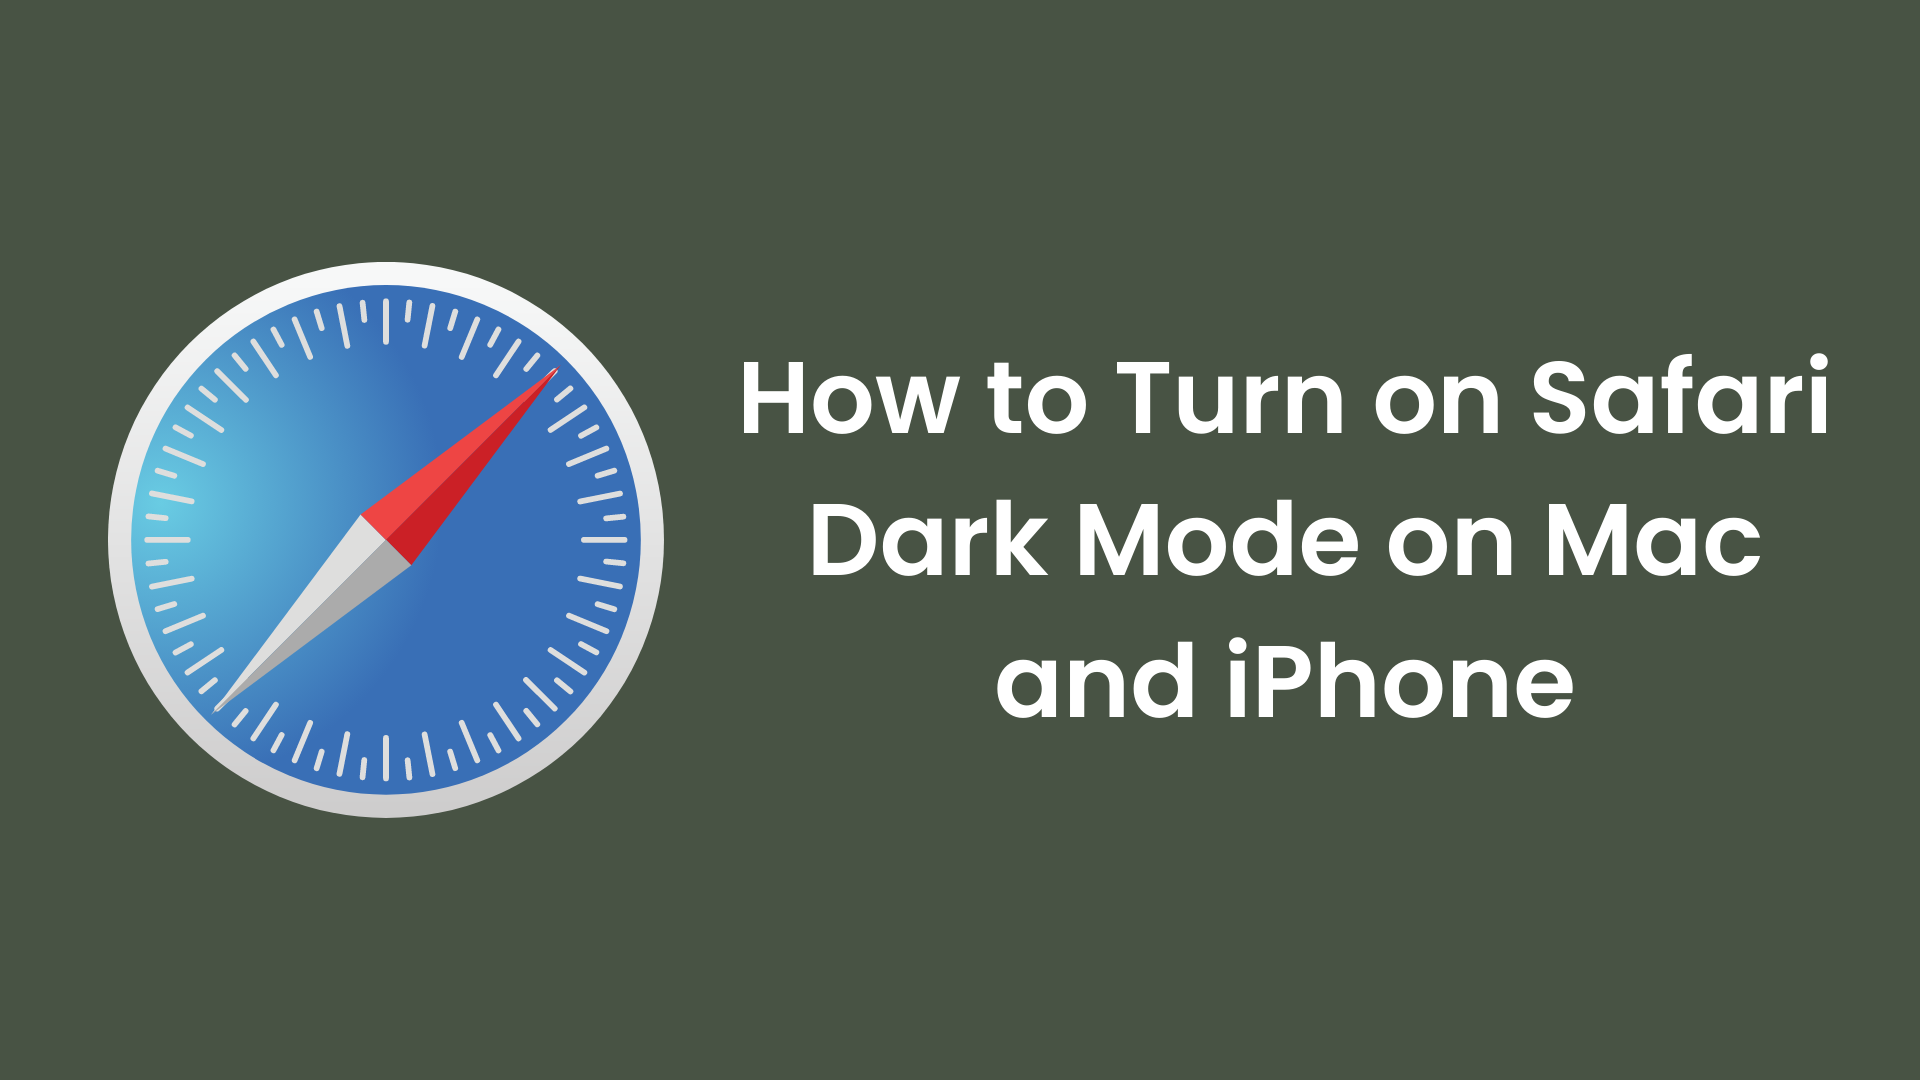 How to Turn on Safari Dark Mode on Mac and iPhone